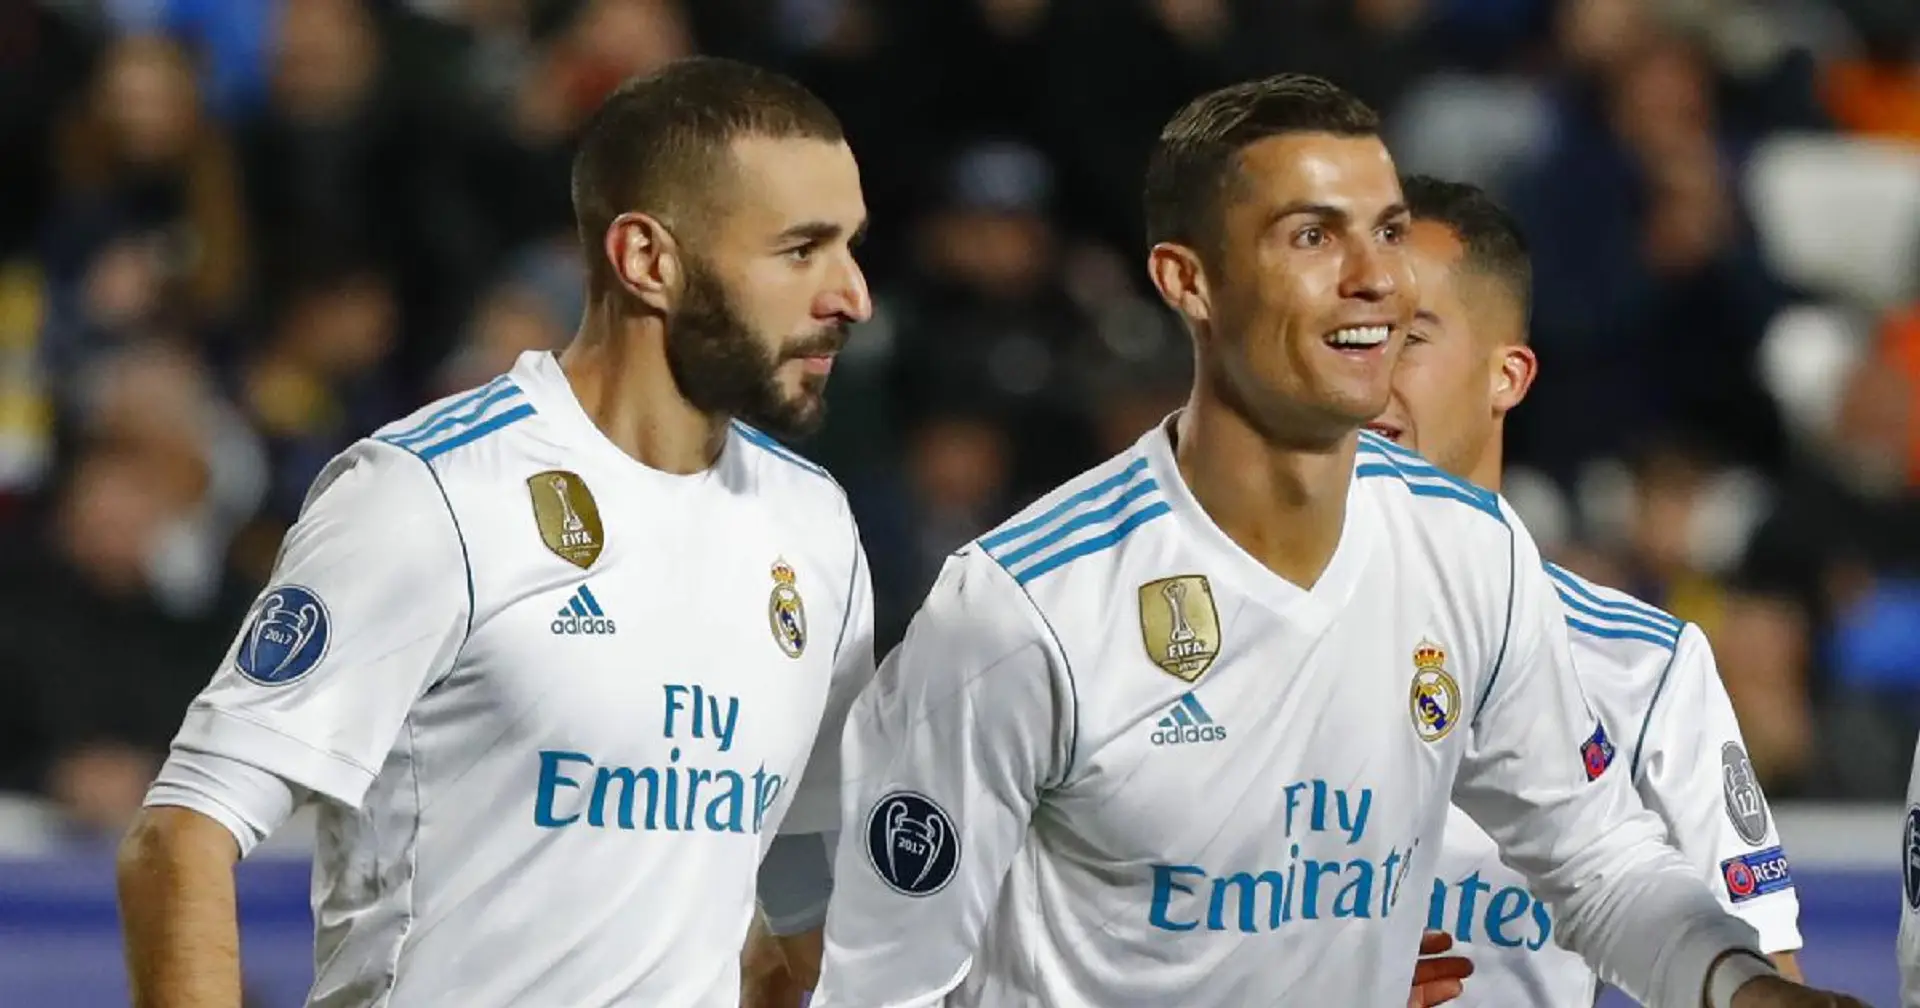 Le duo Ronaldo-Benzema se classe 2ème parmi les duos les plus prolifiques du football